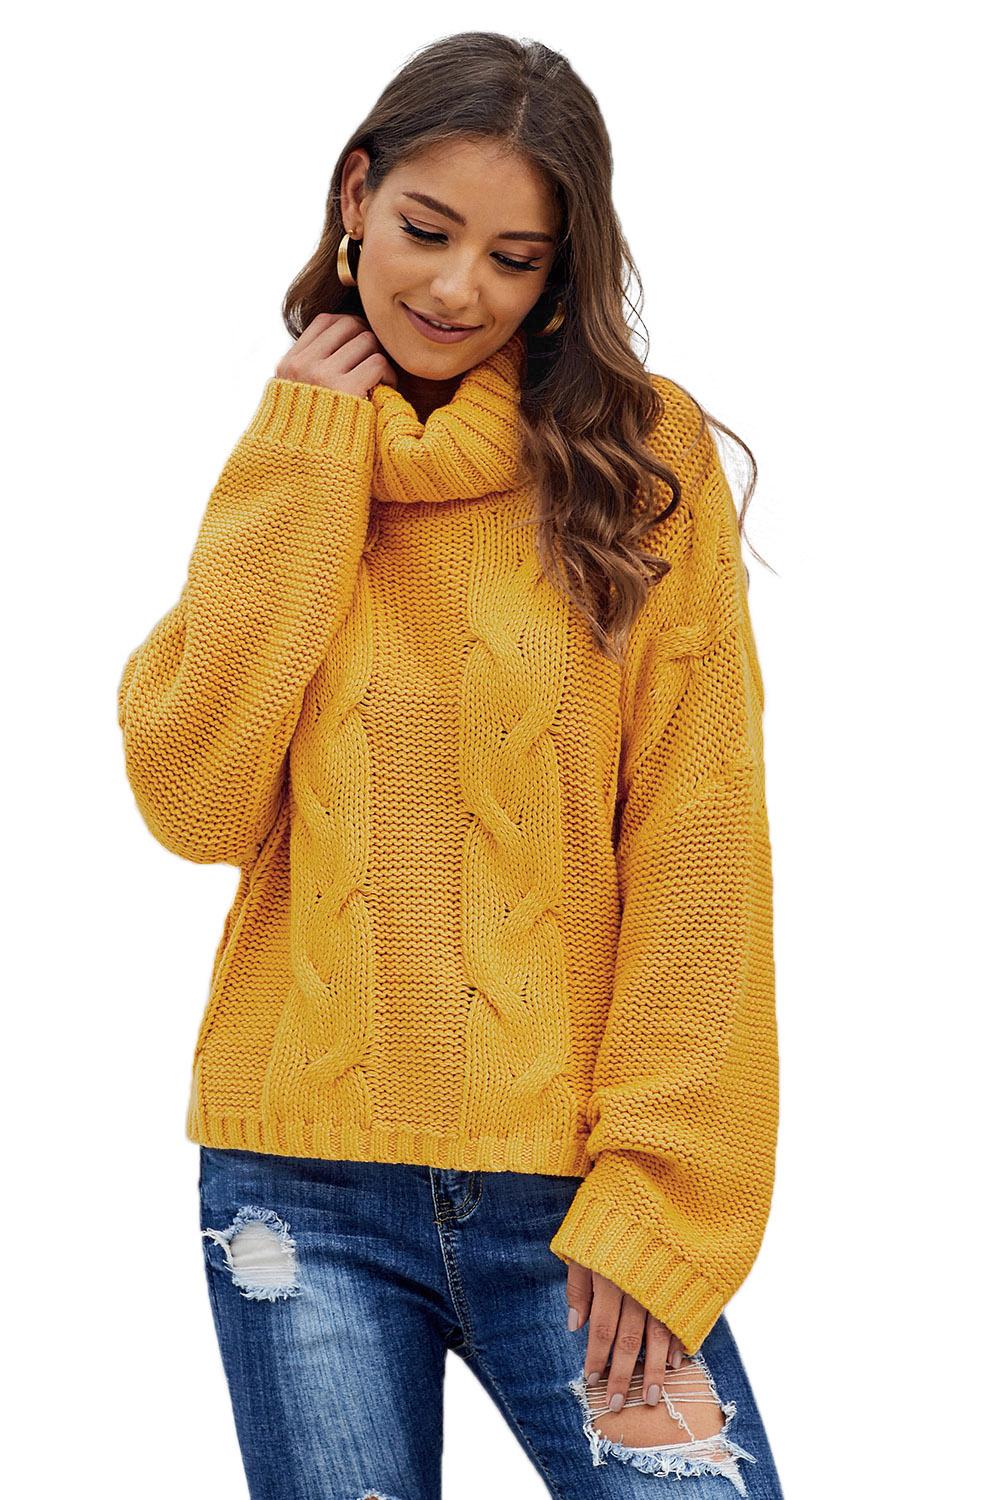 Maglione dolcevita fatto a mano in maglia a trecce giallo Cuddle Weather